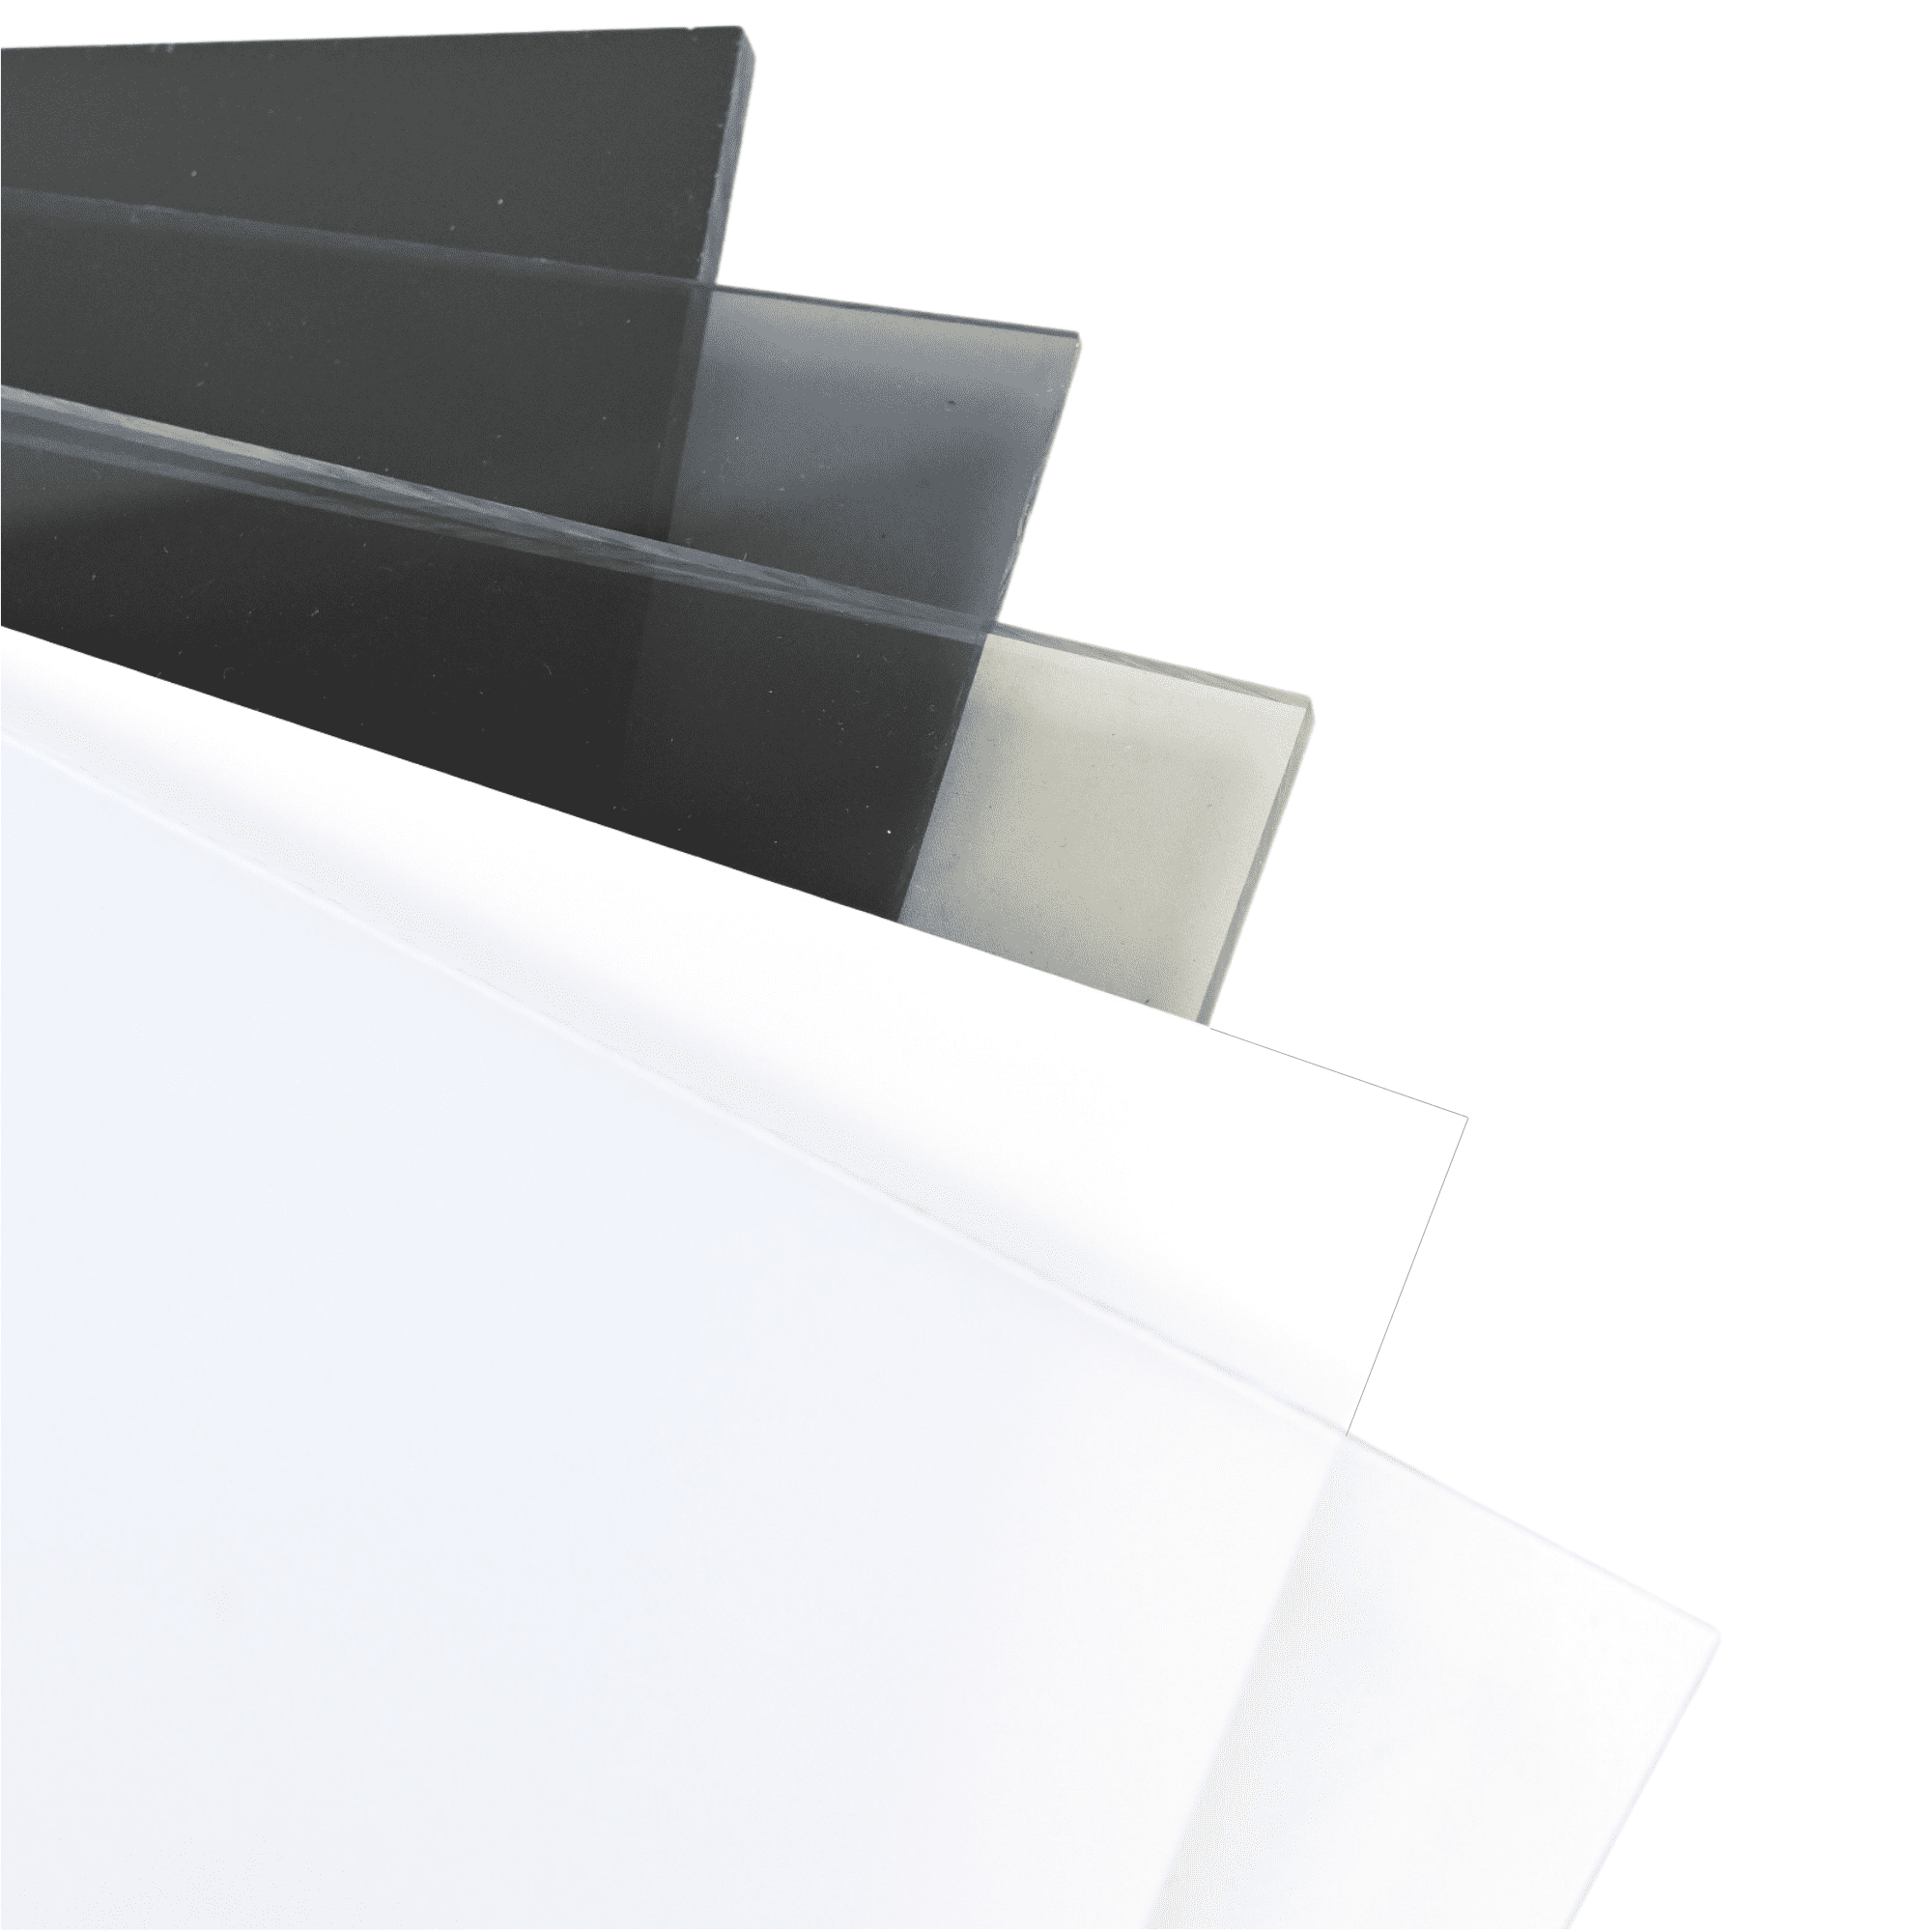 Lexan™ 9034 Polycarbonate Plastic Sheet